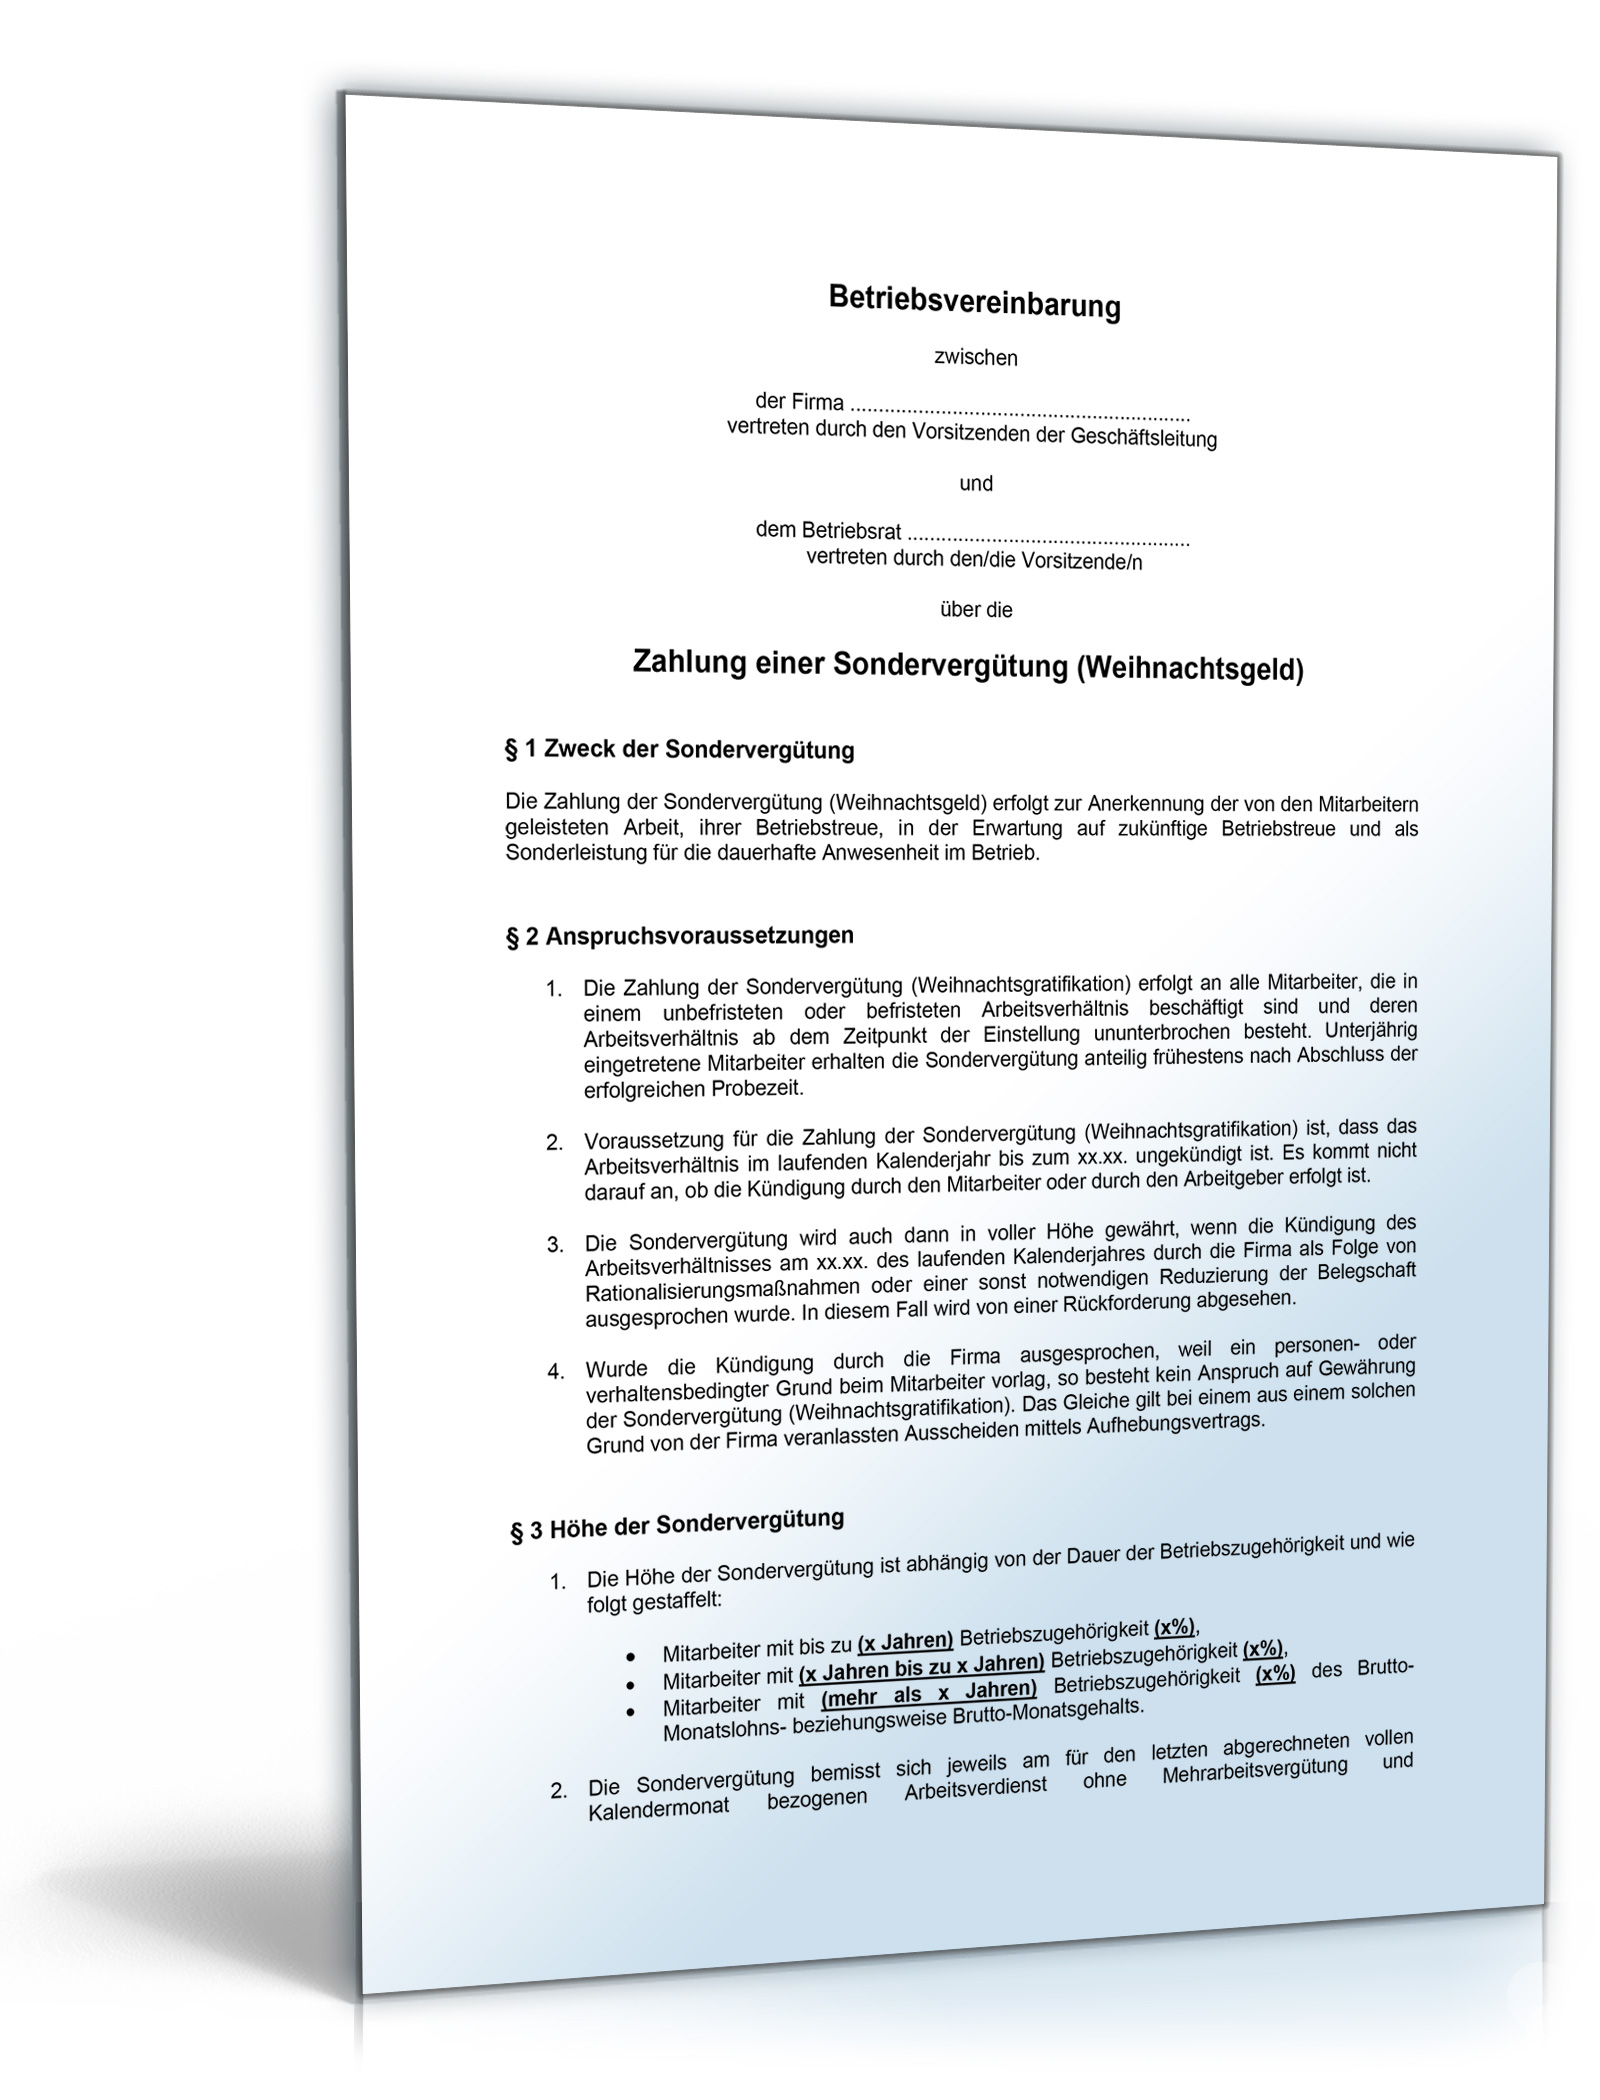 Betriebsvereinbarung über die Zahlung einer Sondervergütung (Weihnachtsgeld) Dokument zum Download